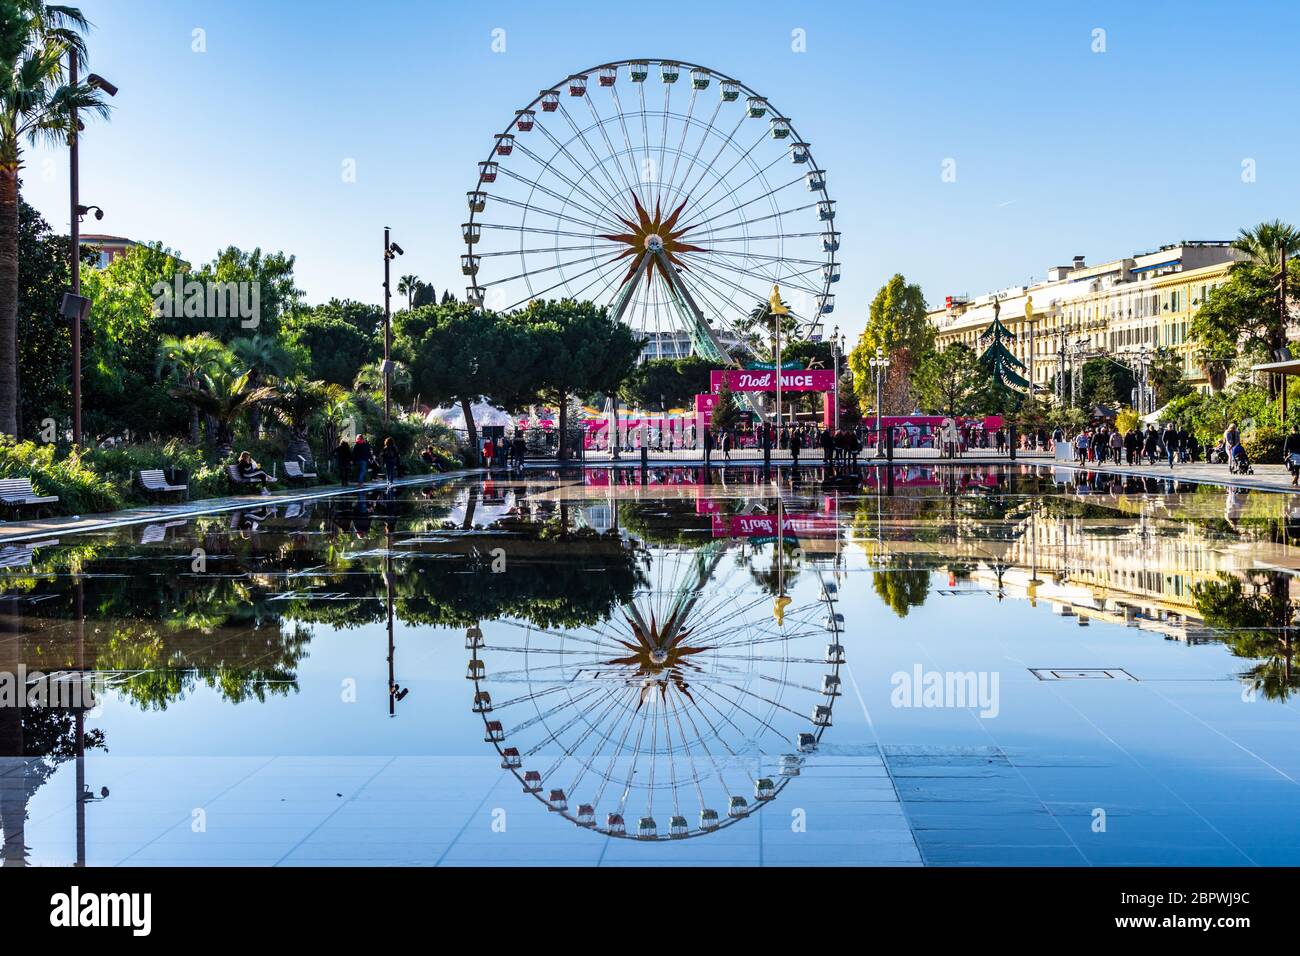 Vue panoramique sur la grande roue de Nice, reflétée dans les eaux des fontaines de la Promenade du Paillon. Nice, France, janvier 2020 Banque D'Images